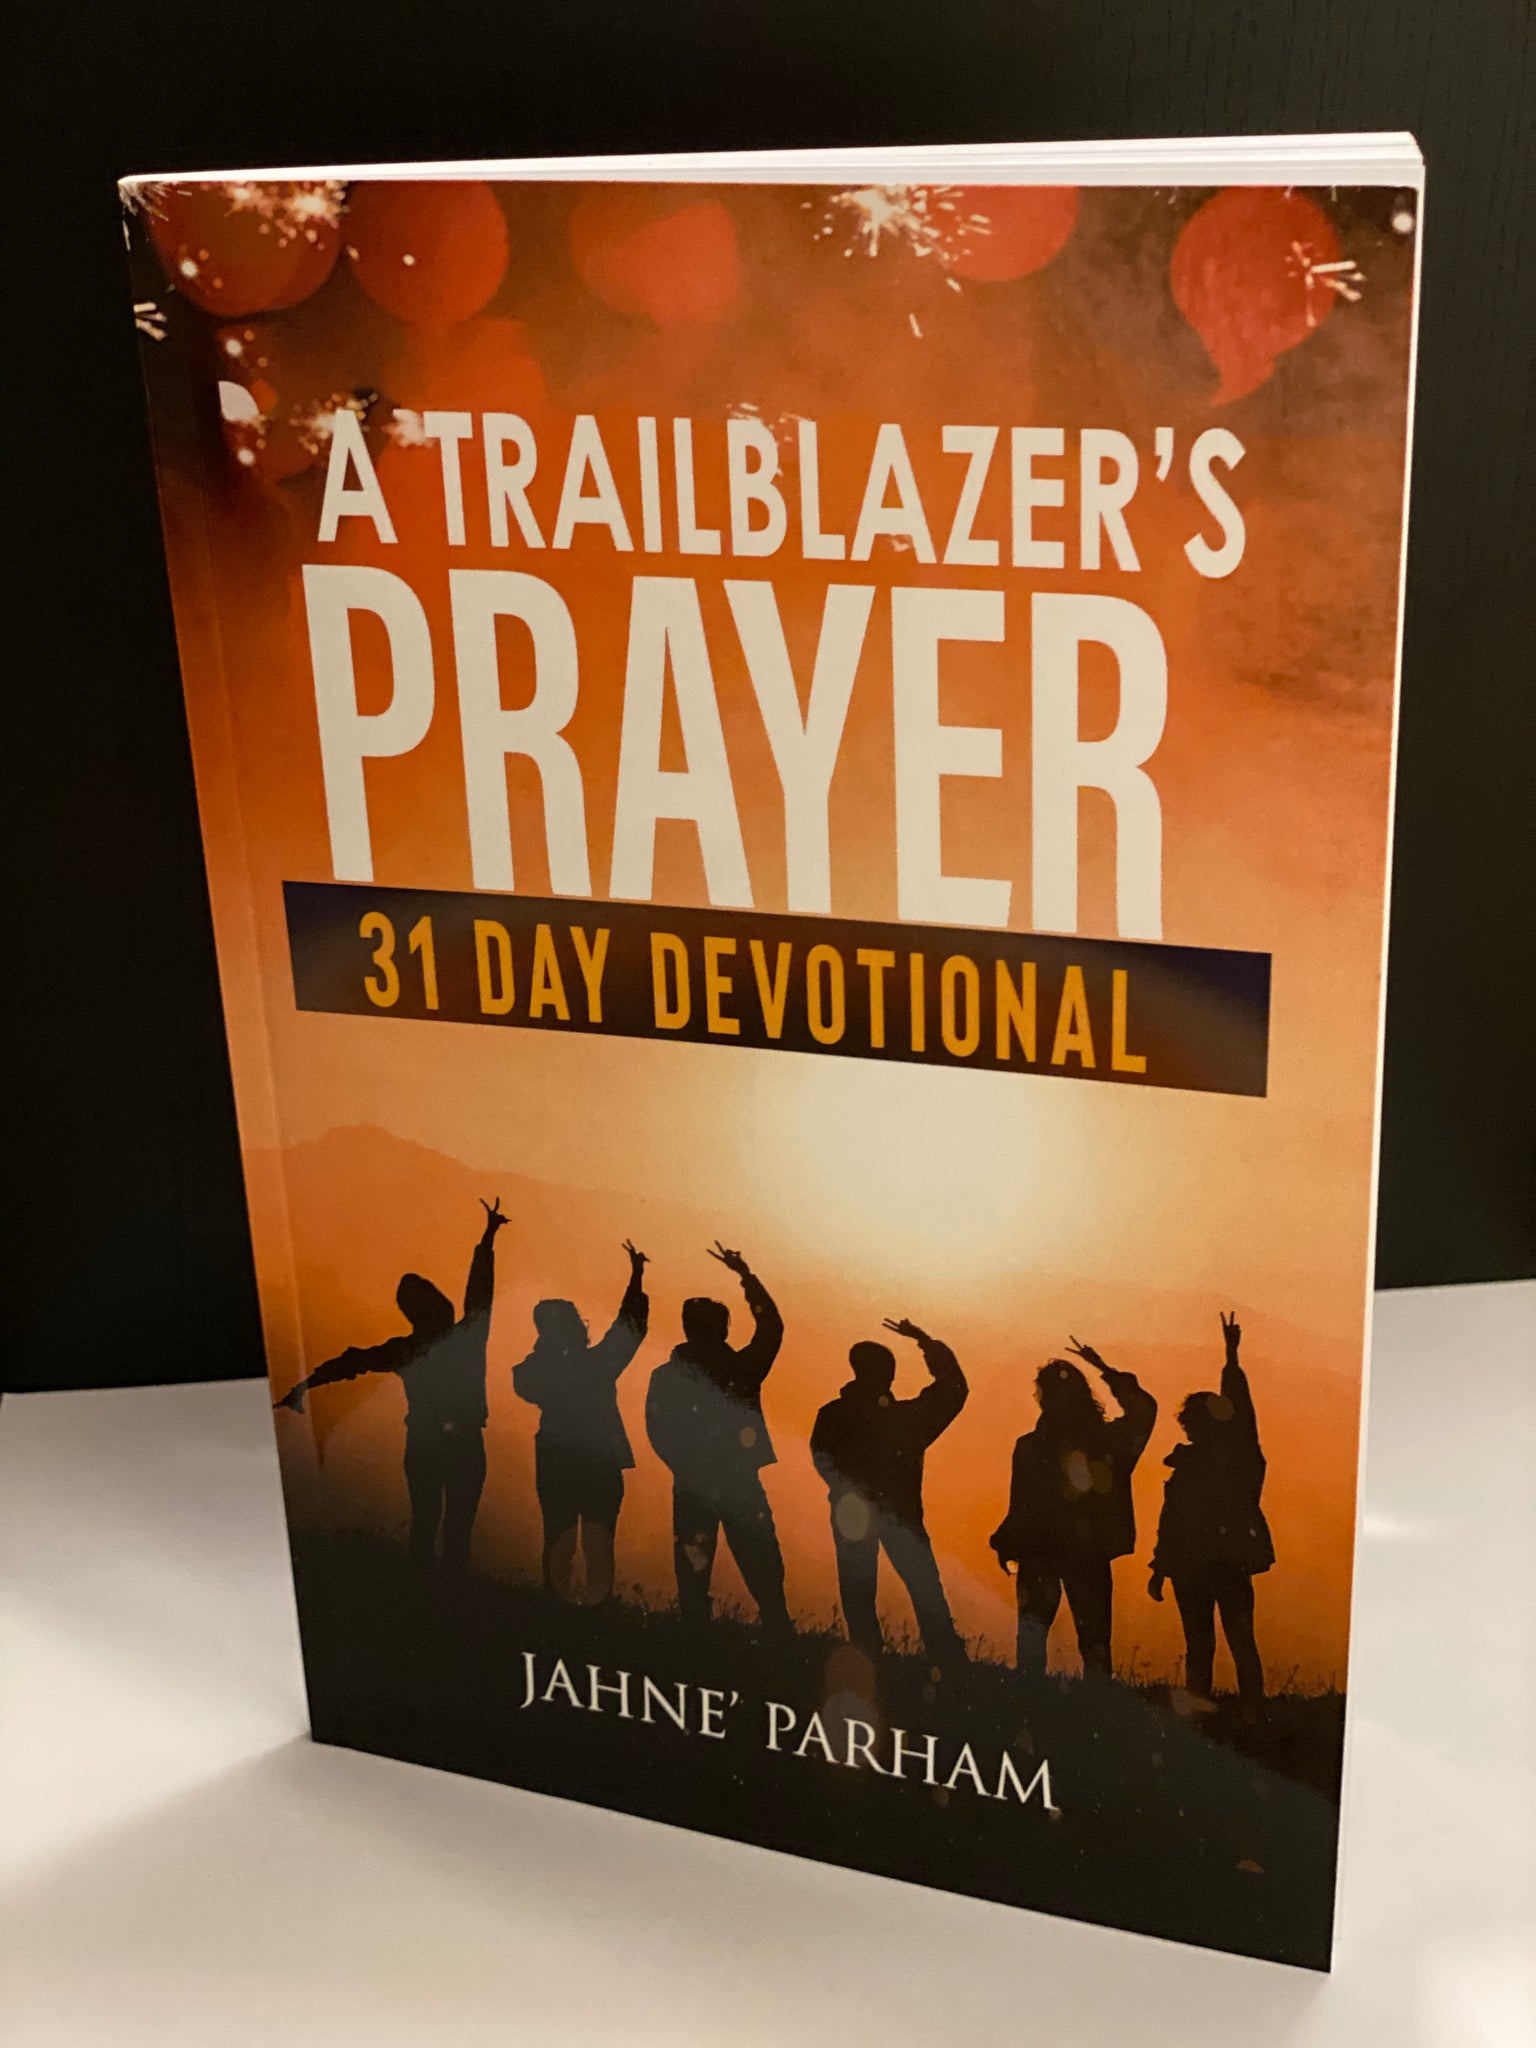 A Trailblazer's Prayer - 31 Day Devotional